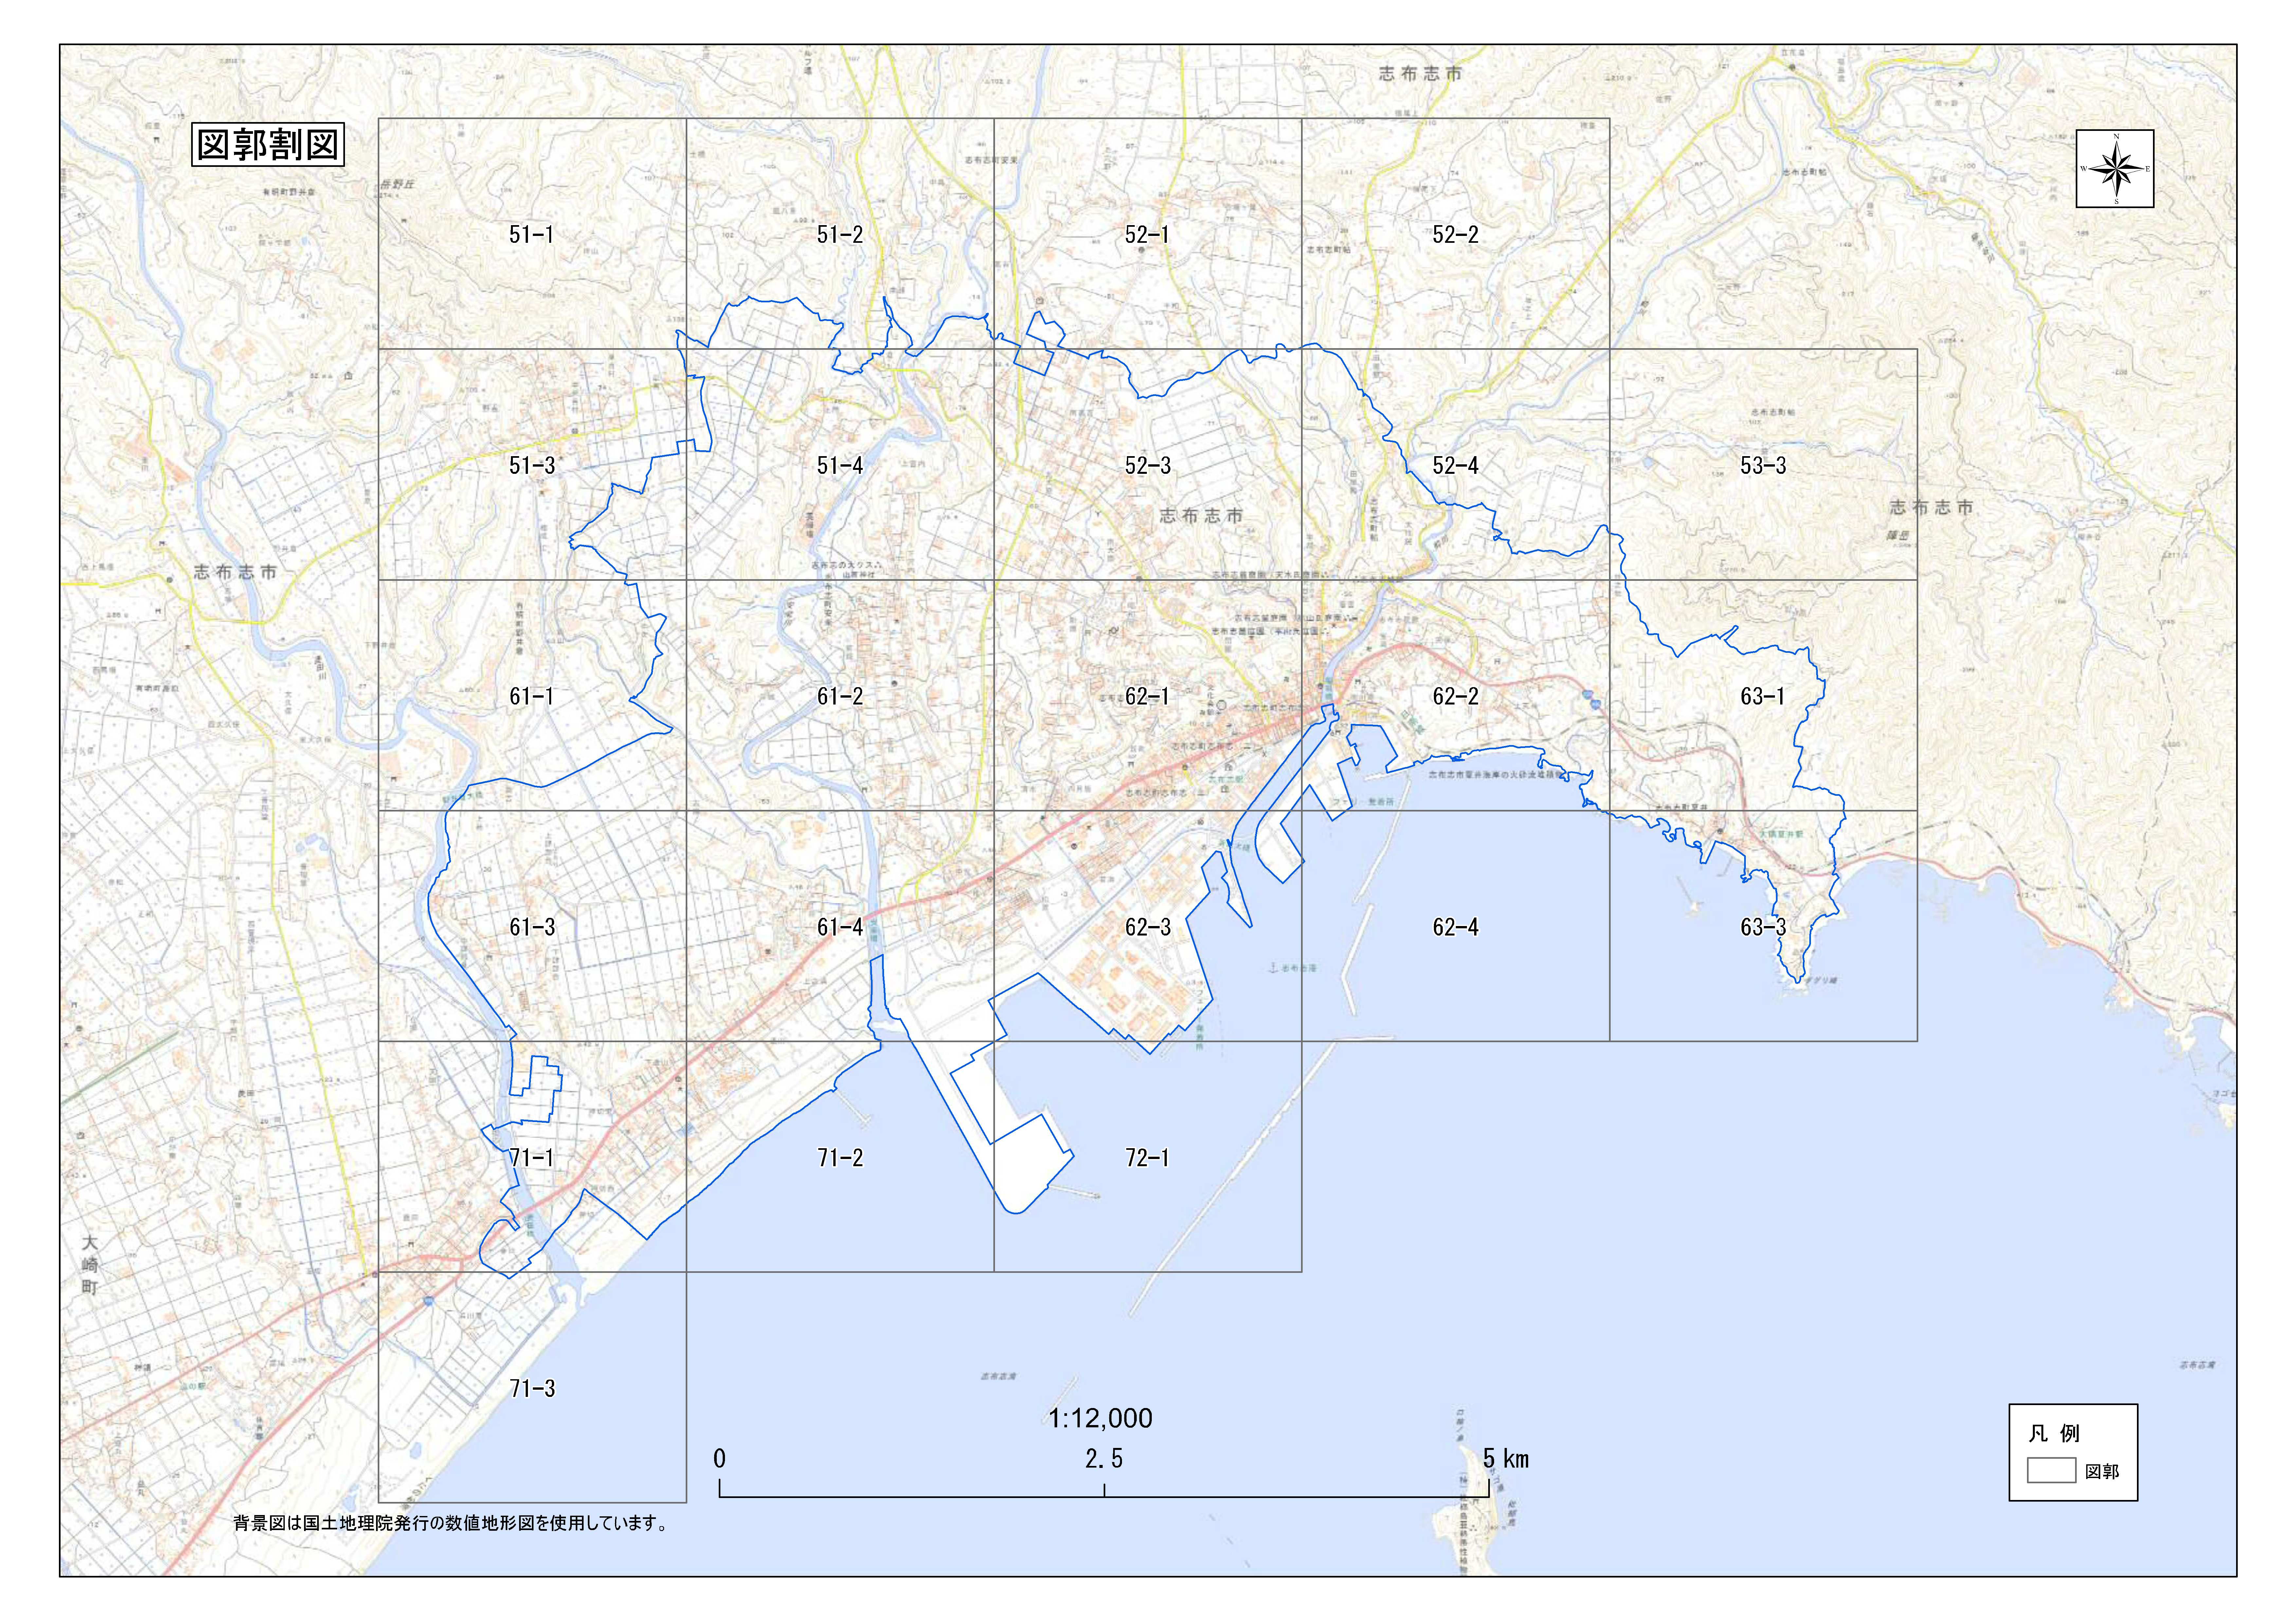 志布志市 都市計画図の区画を表す画像です